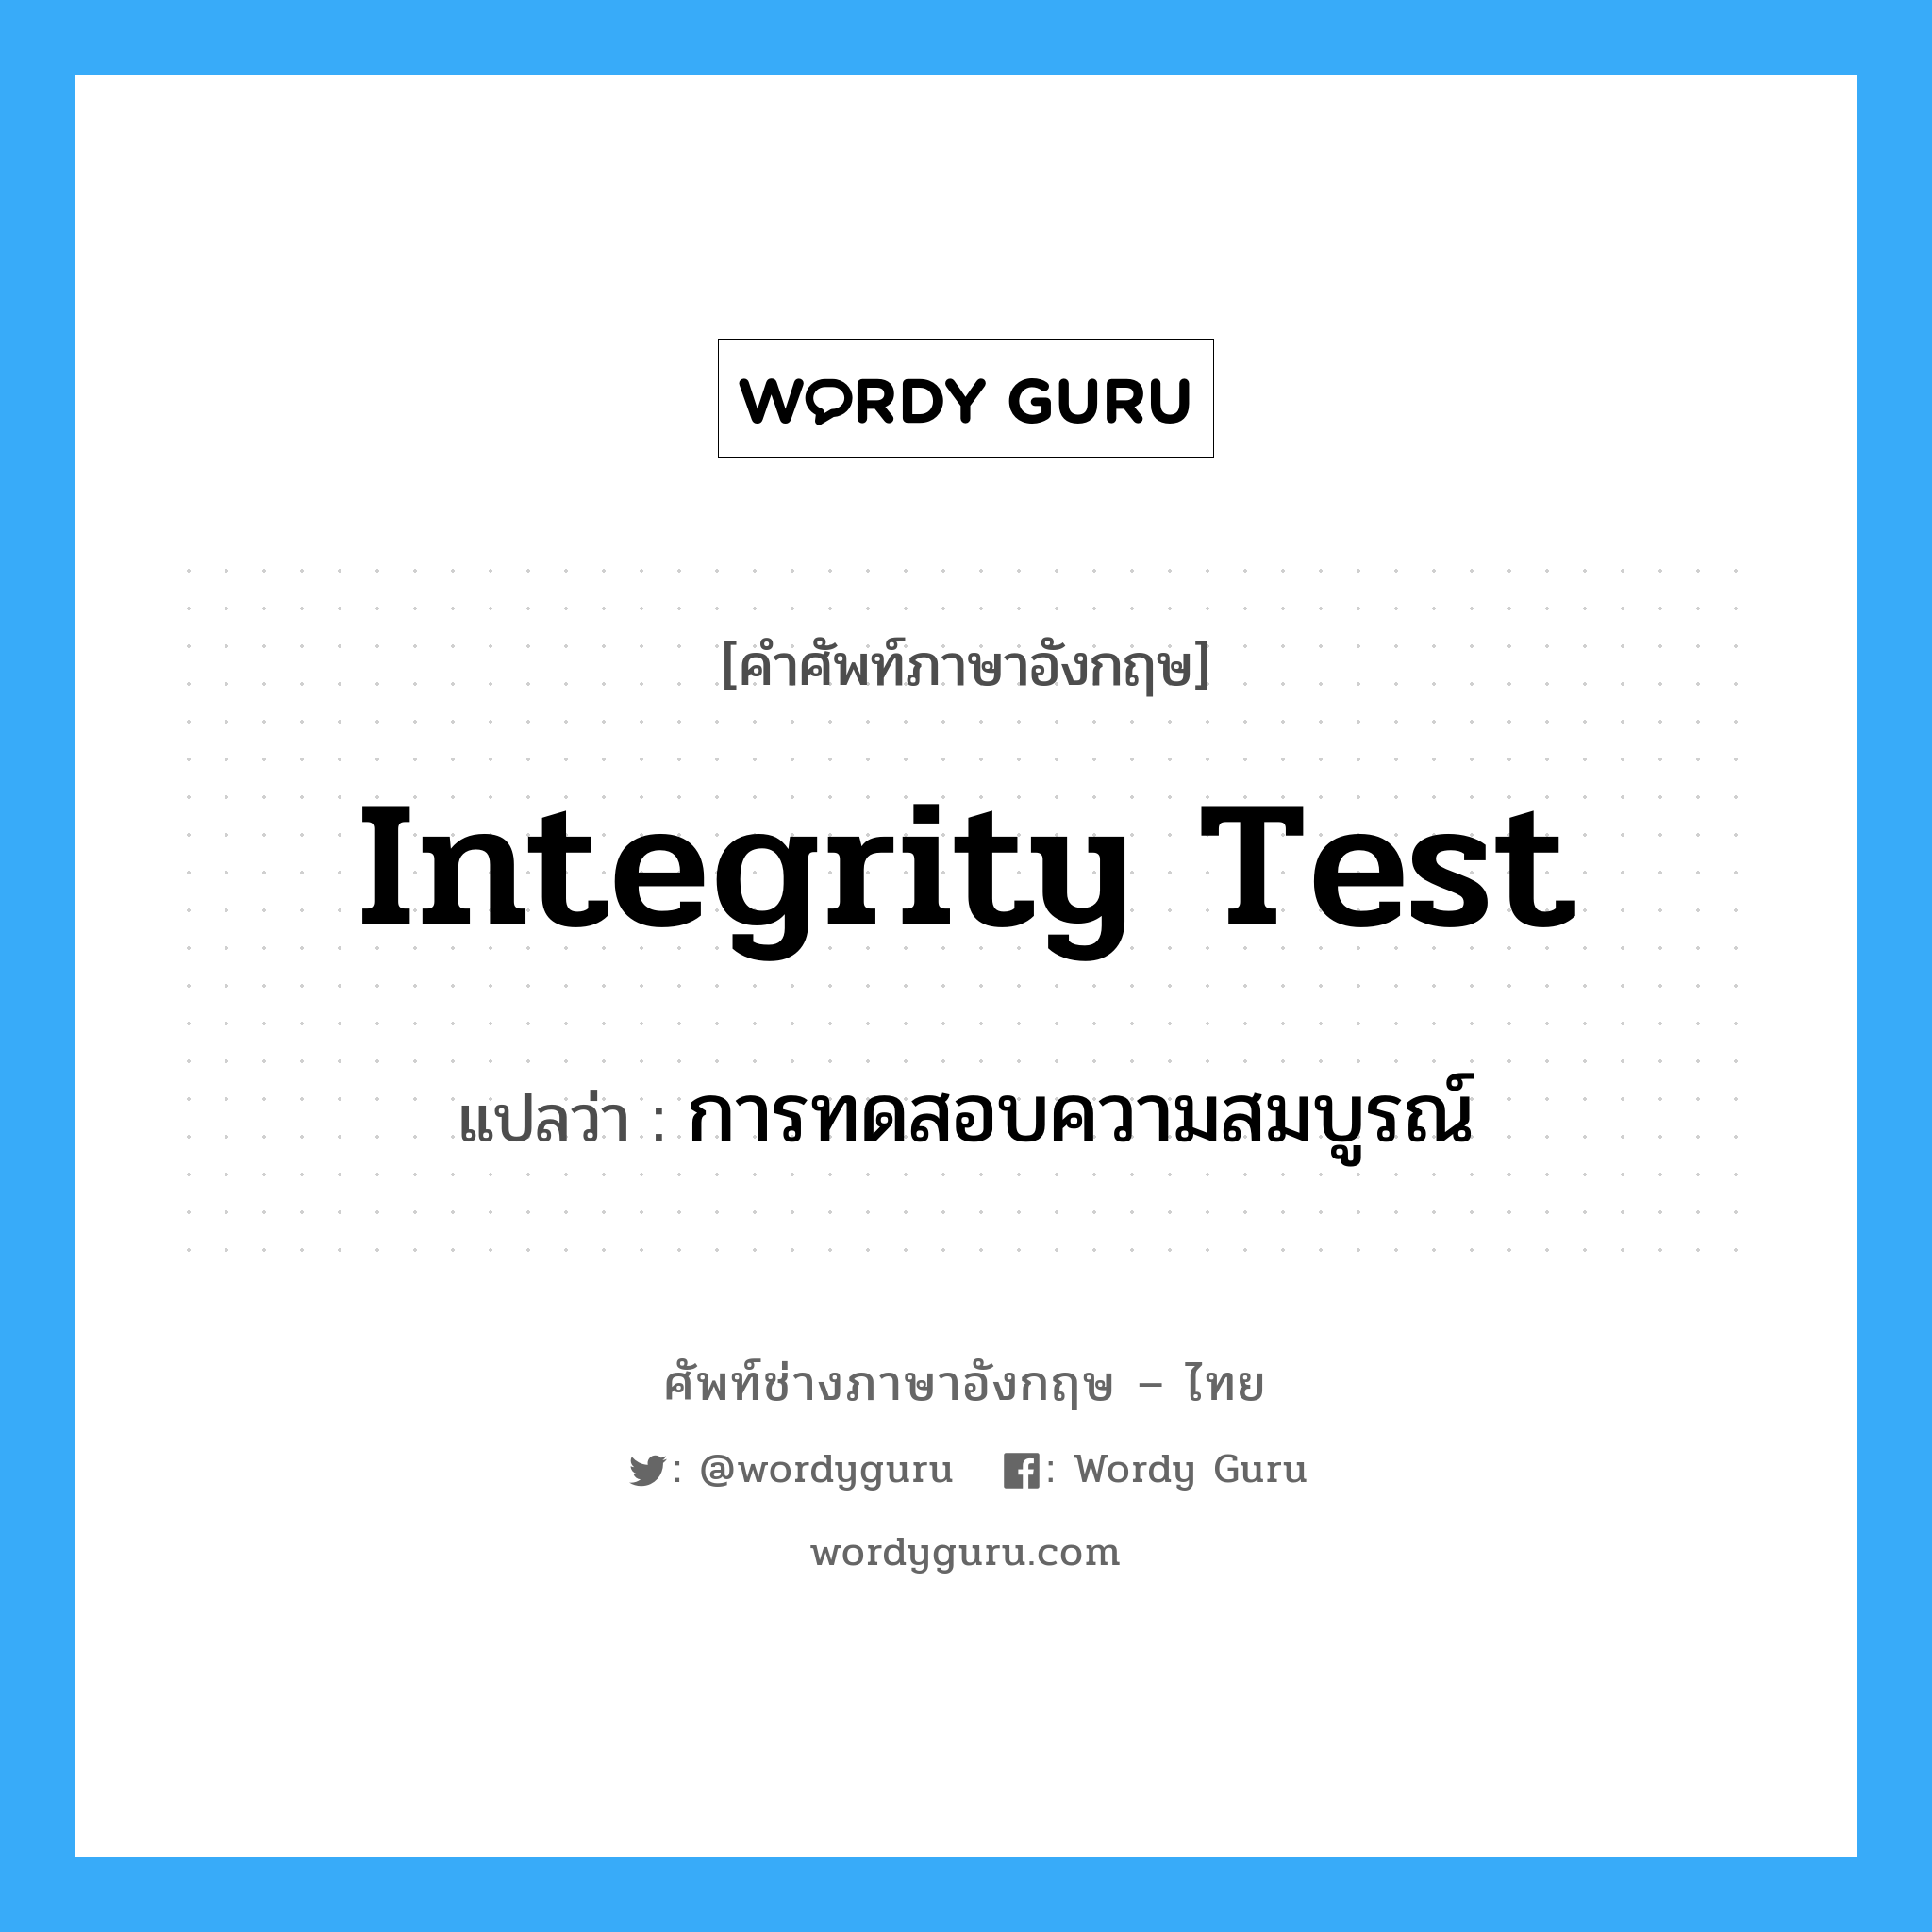 การทดสอบความสมบูรณ์ ภาษาอังกฤษ?, คำศัพท์ช่างภาษาอังกฤษ - ไทย การทดสอบความสมบูรณ์ คำศัพท์ภาษาอังกฤษ การทดสอบความสมบูรณ์ แปลว่า integrity test